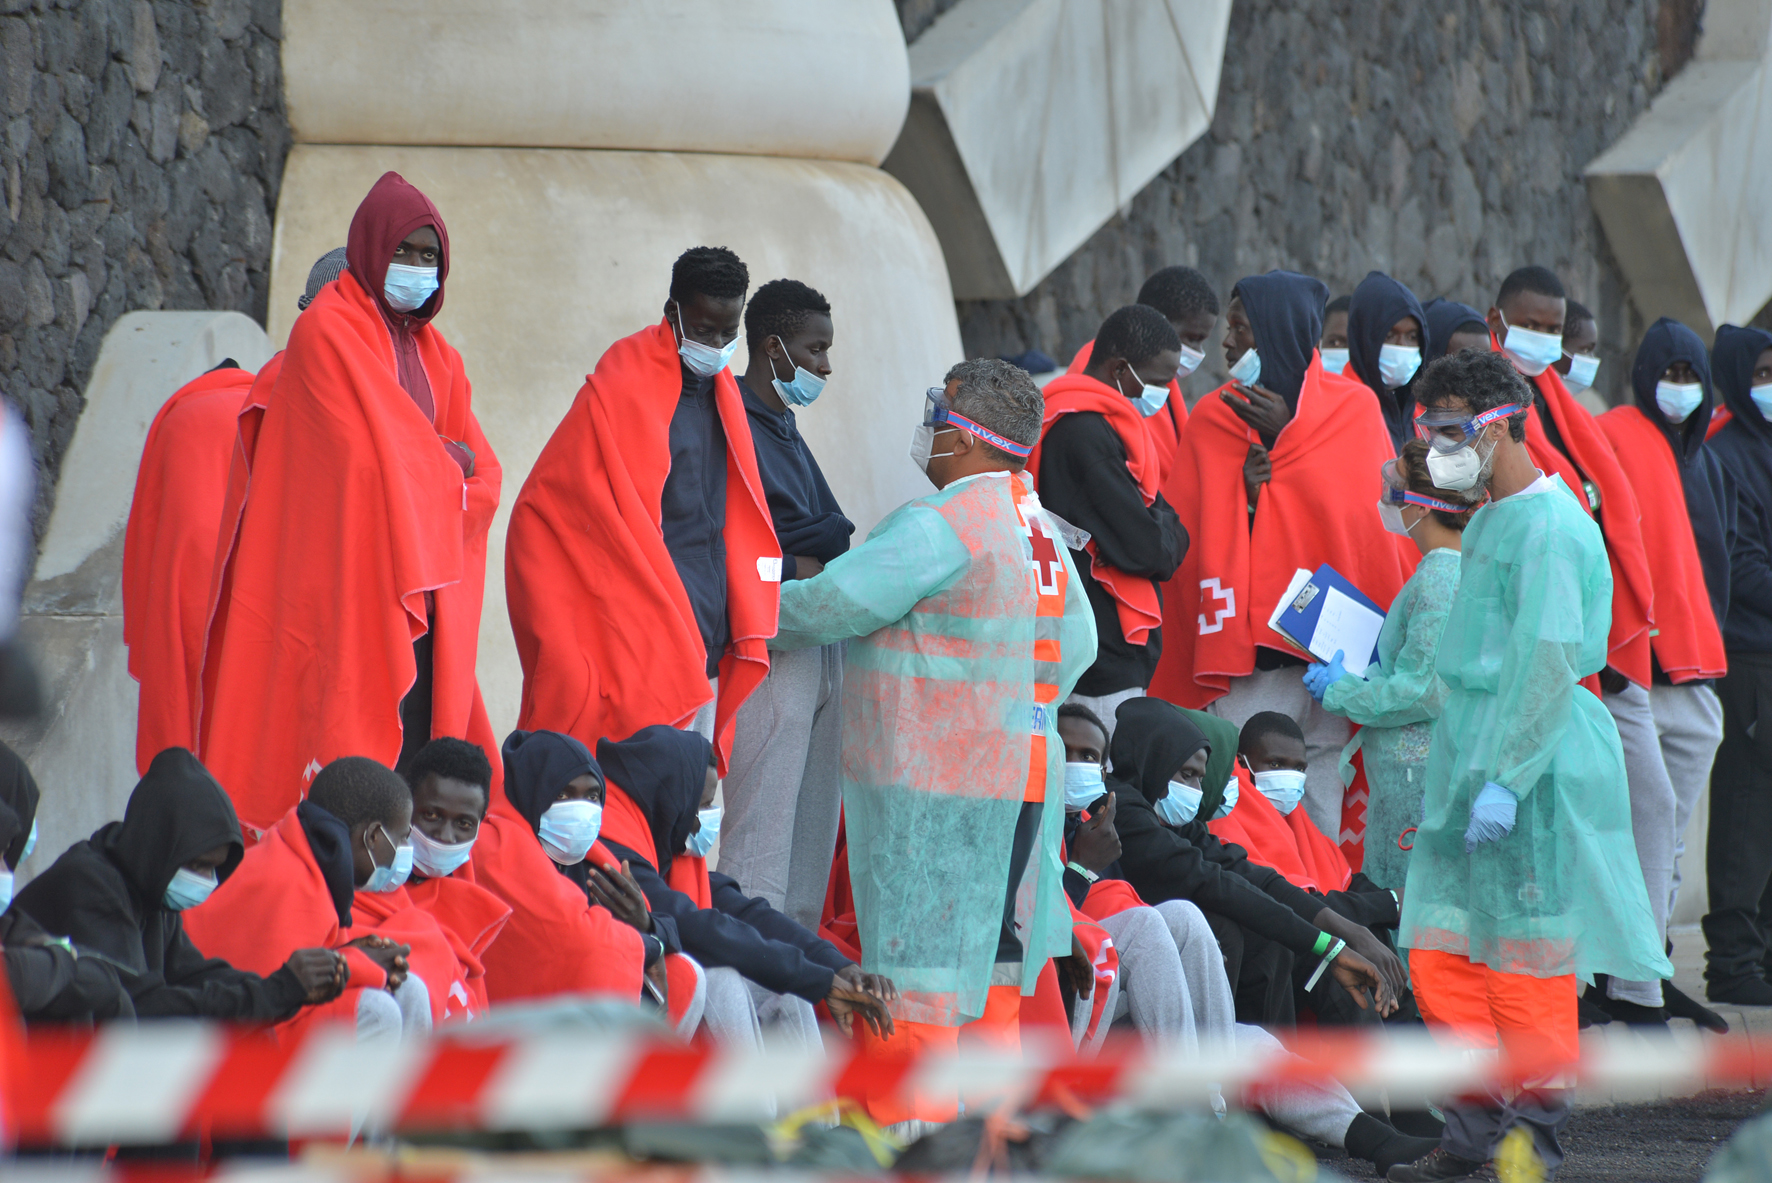 Rescatada una embarcación con 54 personas a bordo en aguas próximas a El Hierro